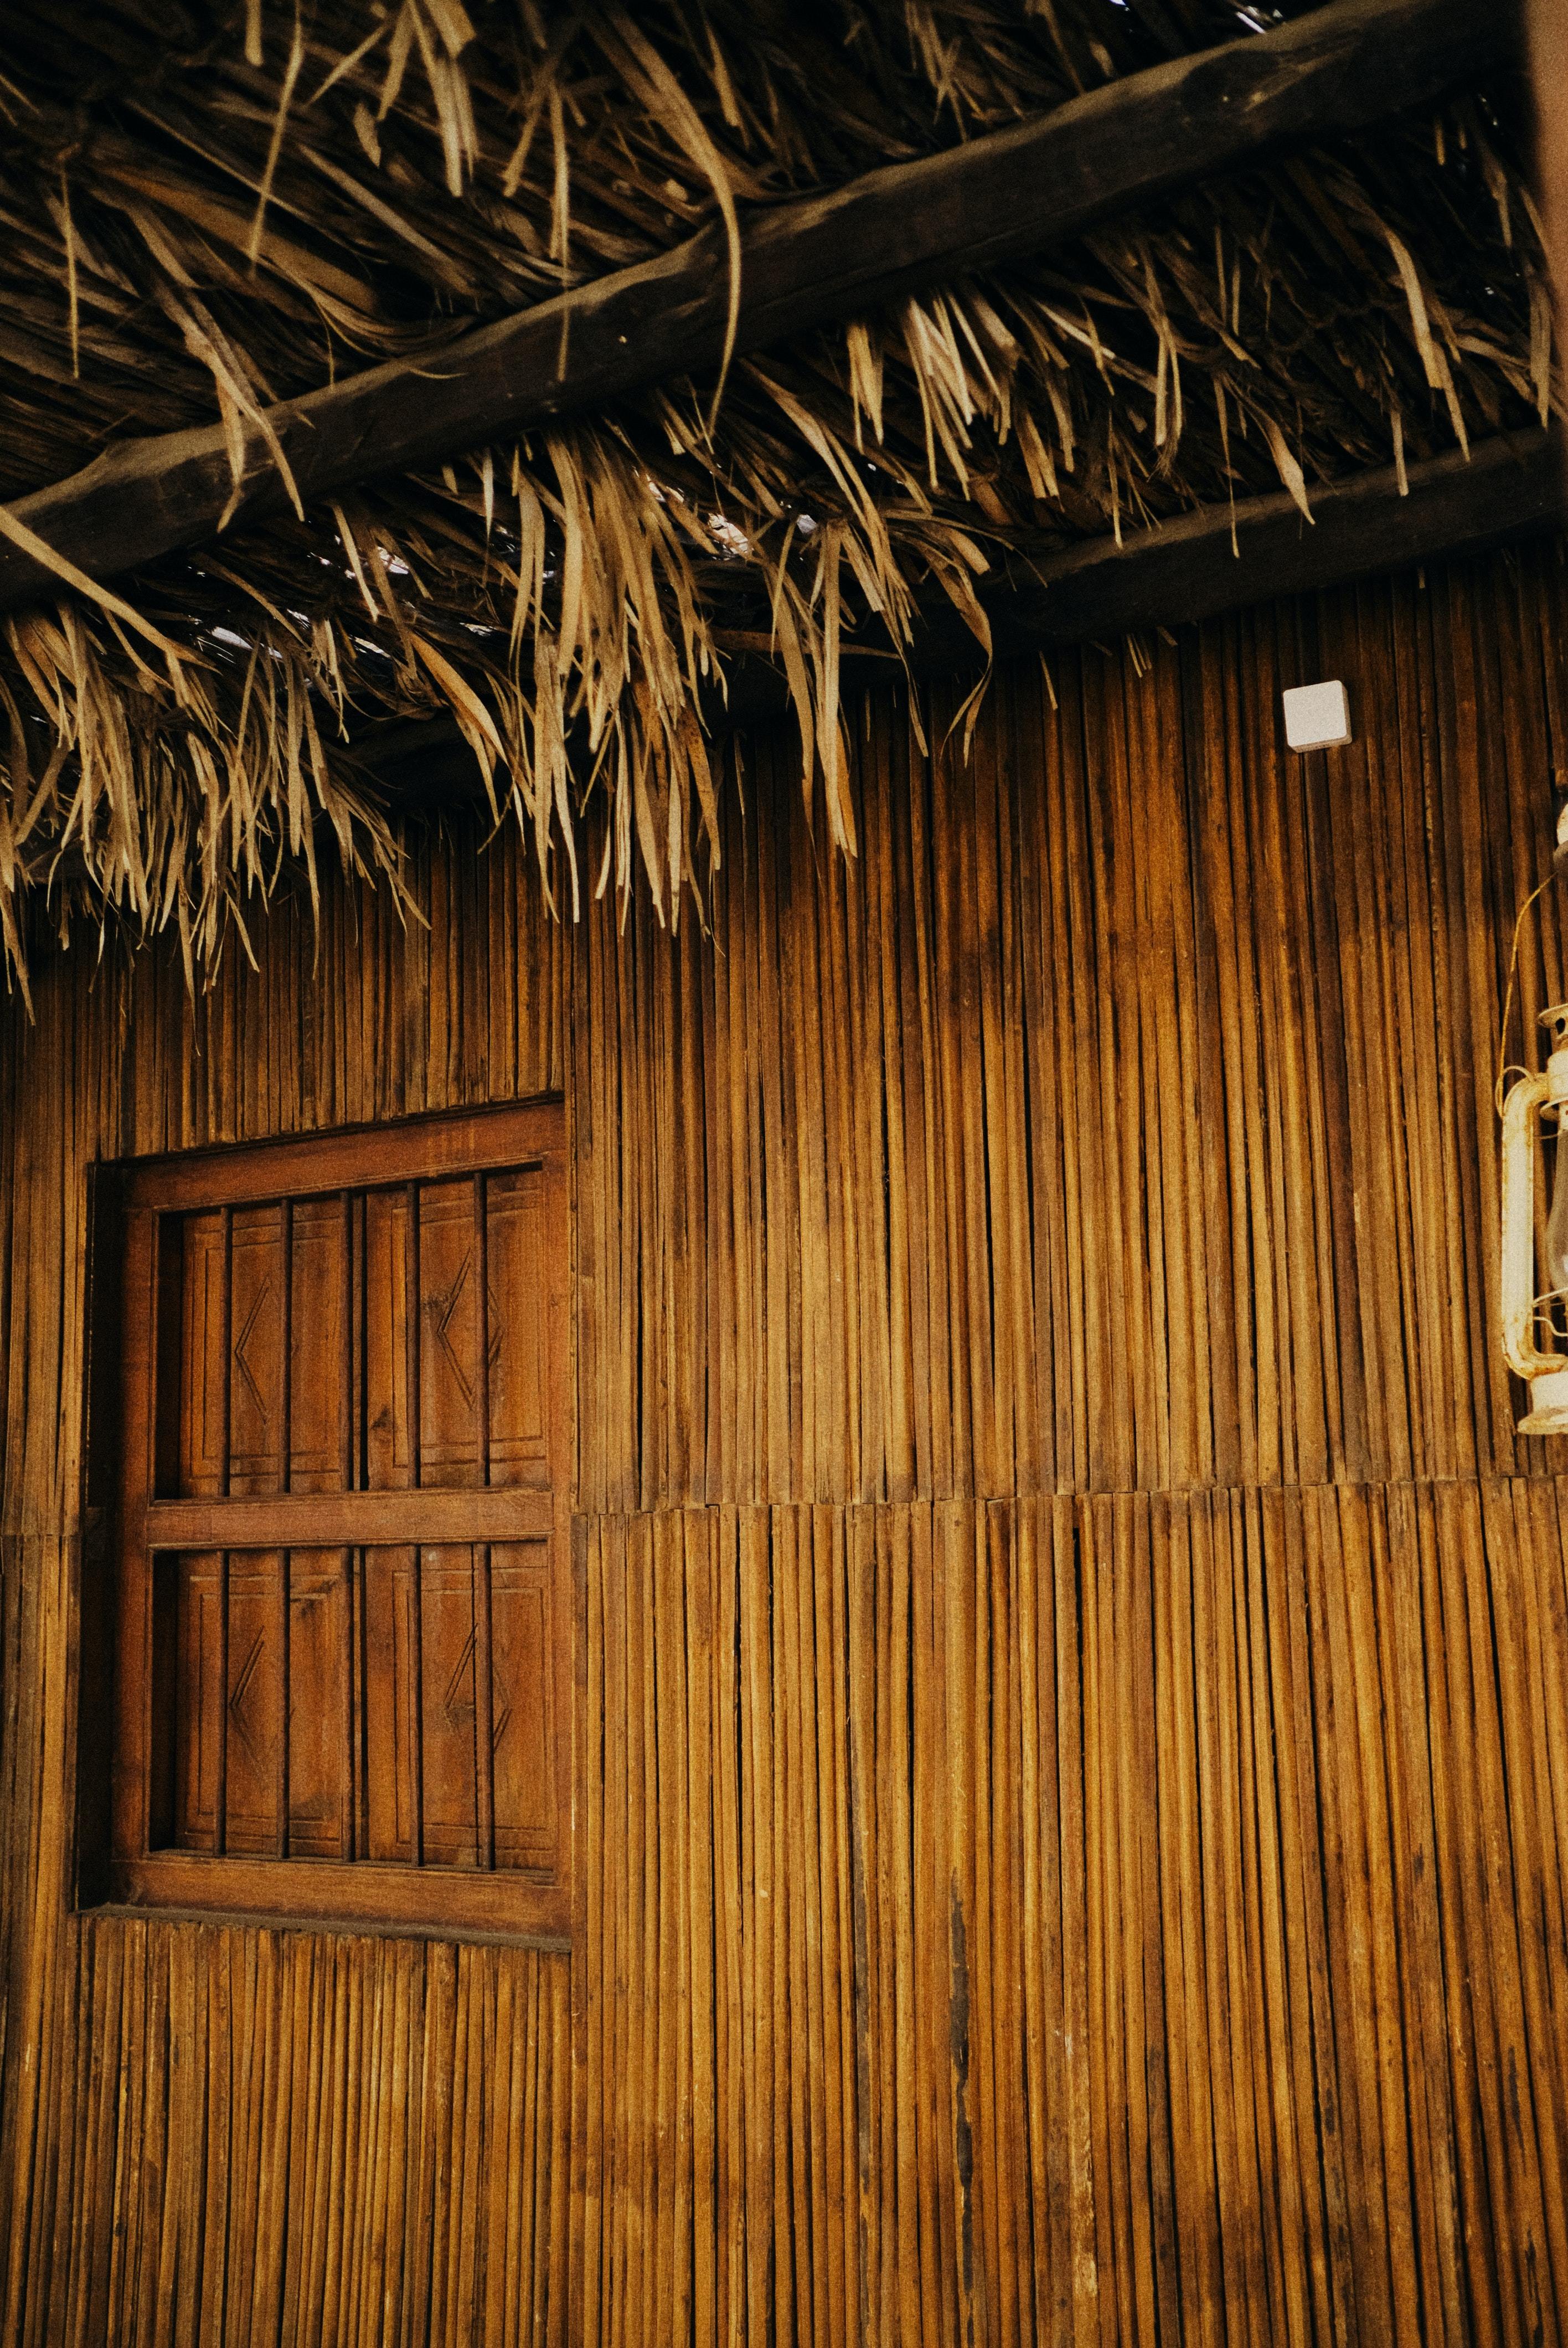 旧房子竹子结构墙面手机壁纸图片